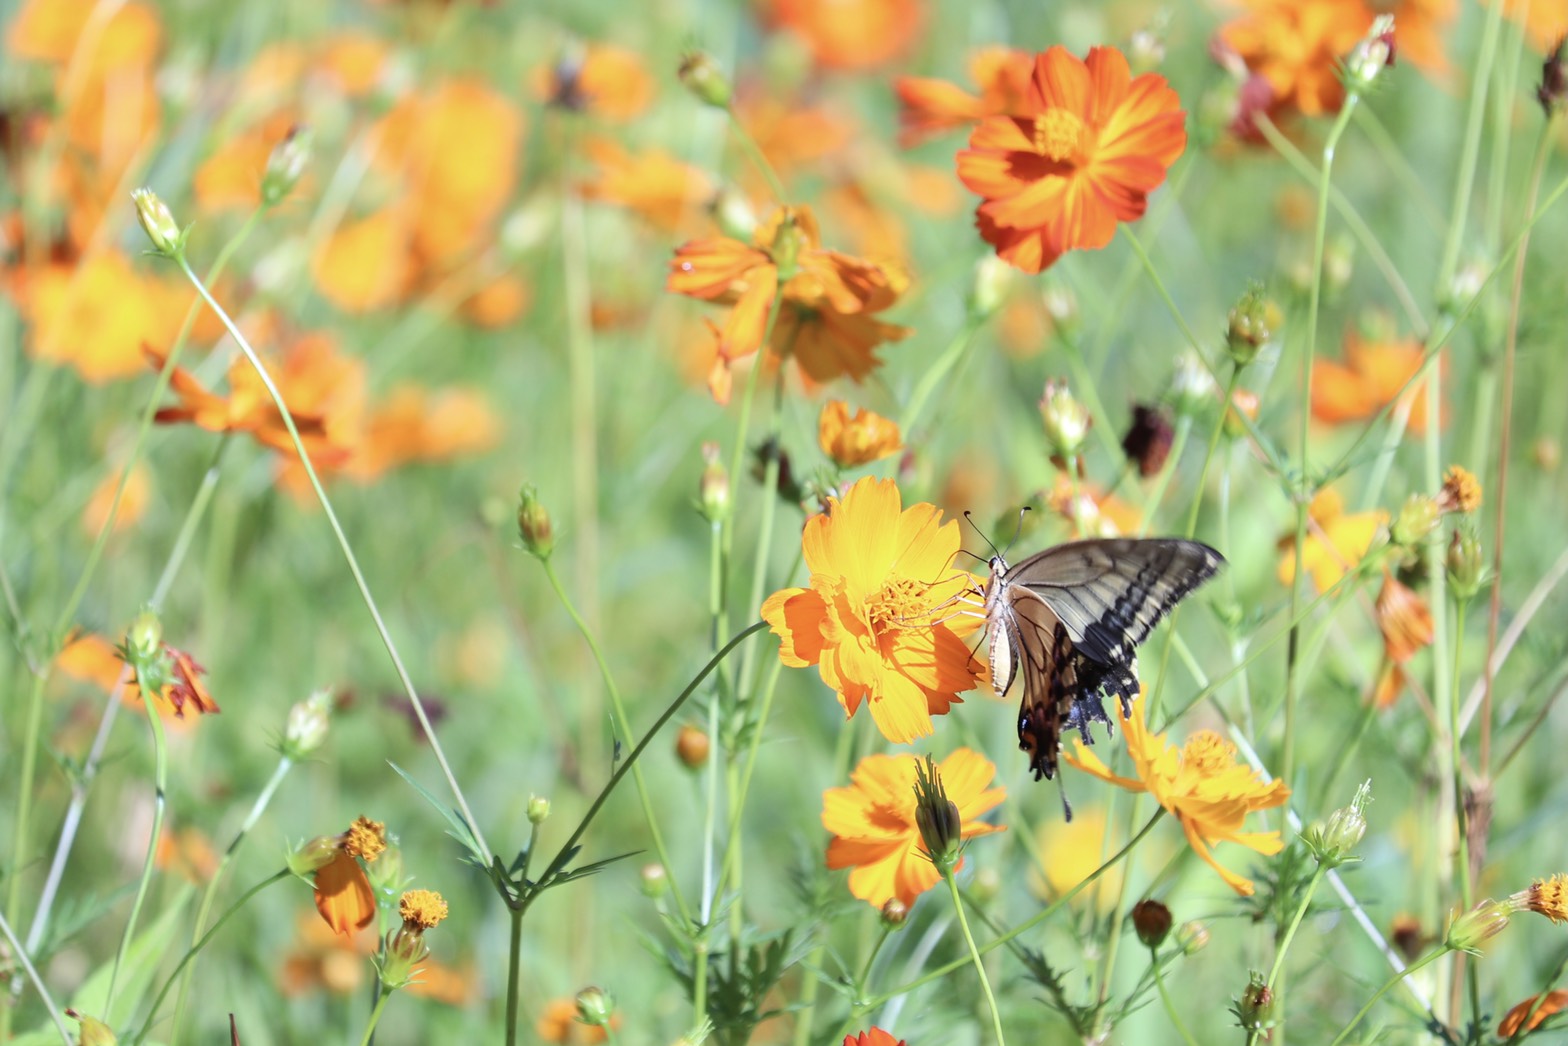 蝶が花の蜜を吸っている、8月4日のキバナコスモス(夏ゾーン)の様子